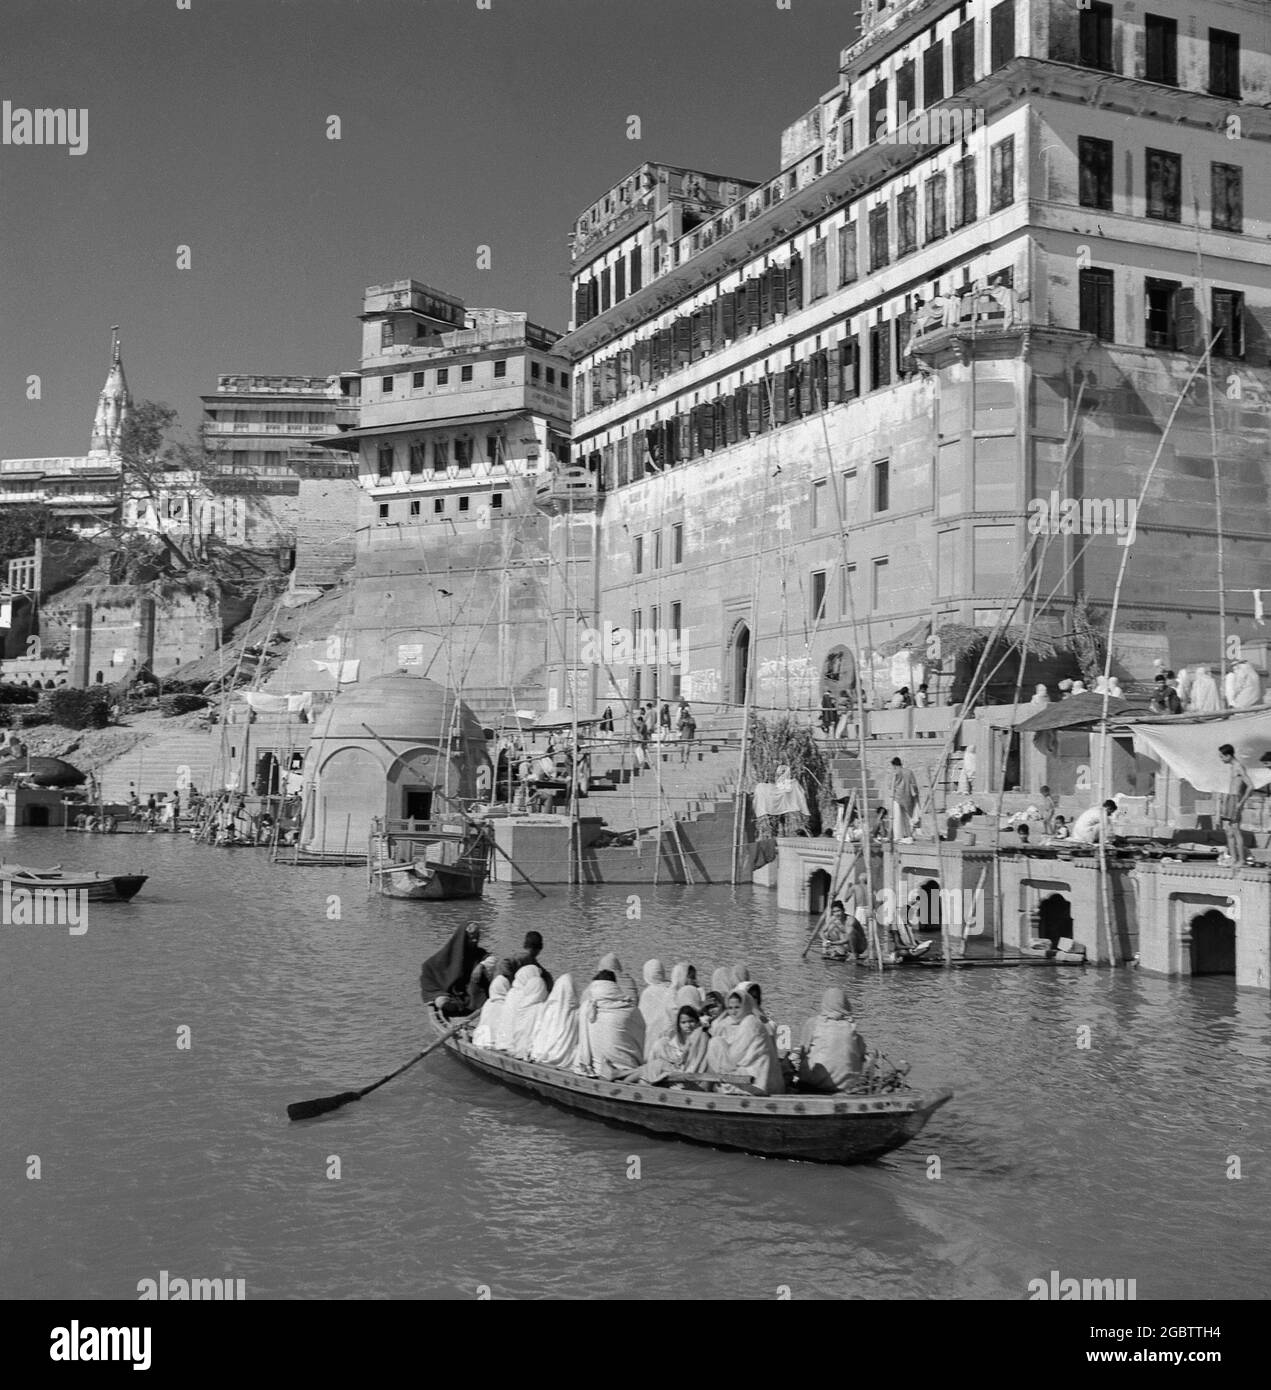 In den 1950er Jahren, geschichtlich, drängten sich Menschen in einem kleinen hölzernen Ruderboot auf dem Ganges-Fluss, Bernares, Indien. Der Fluss zieht Tausende von Pilgern zum Baden an seine Ufer, da sie als heilige Gewässer gelten. Stockfoto